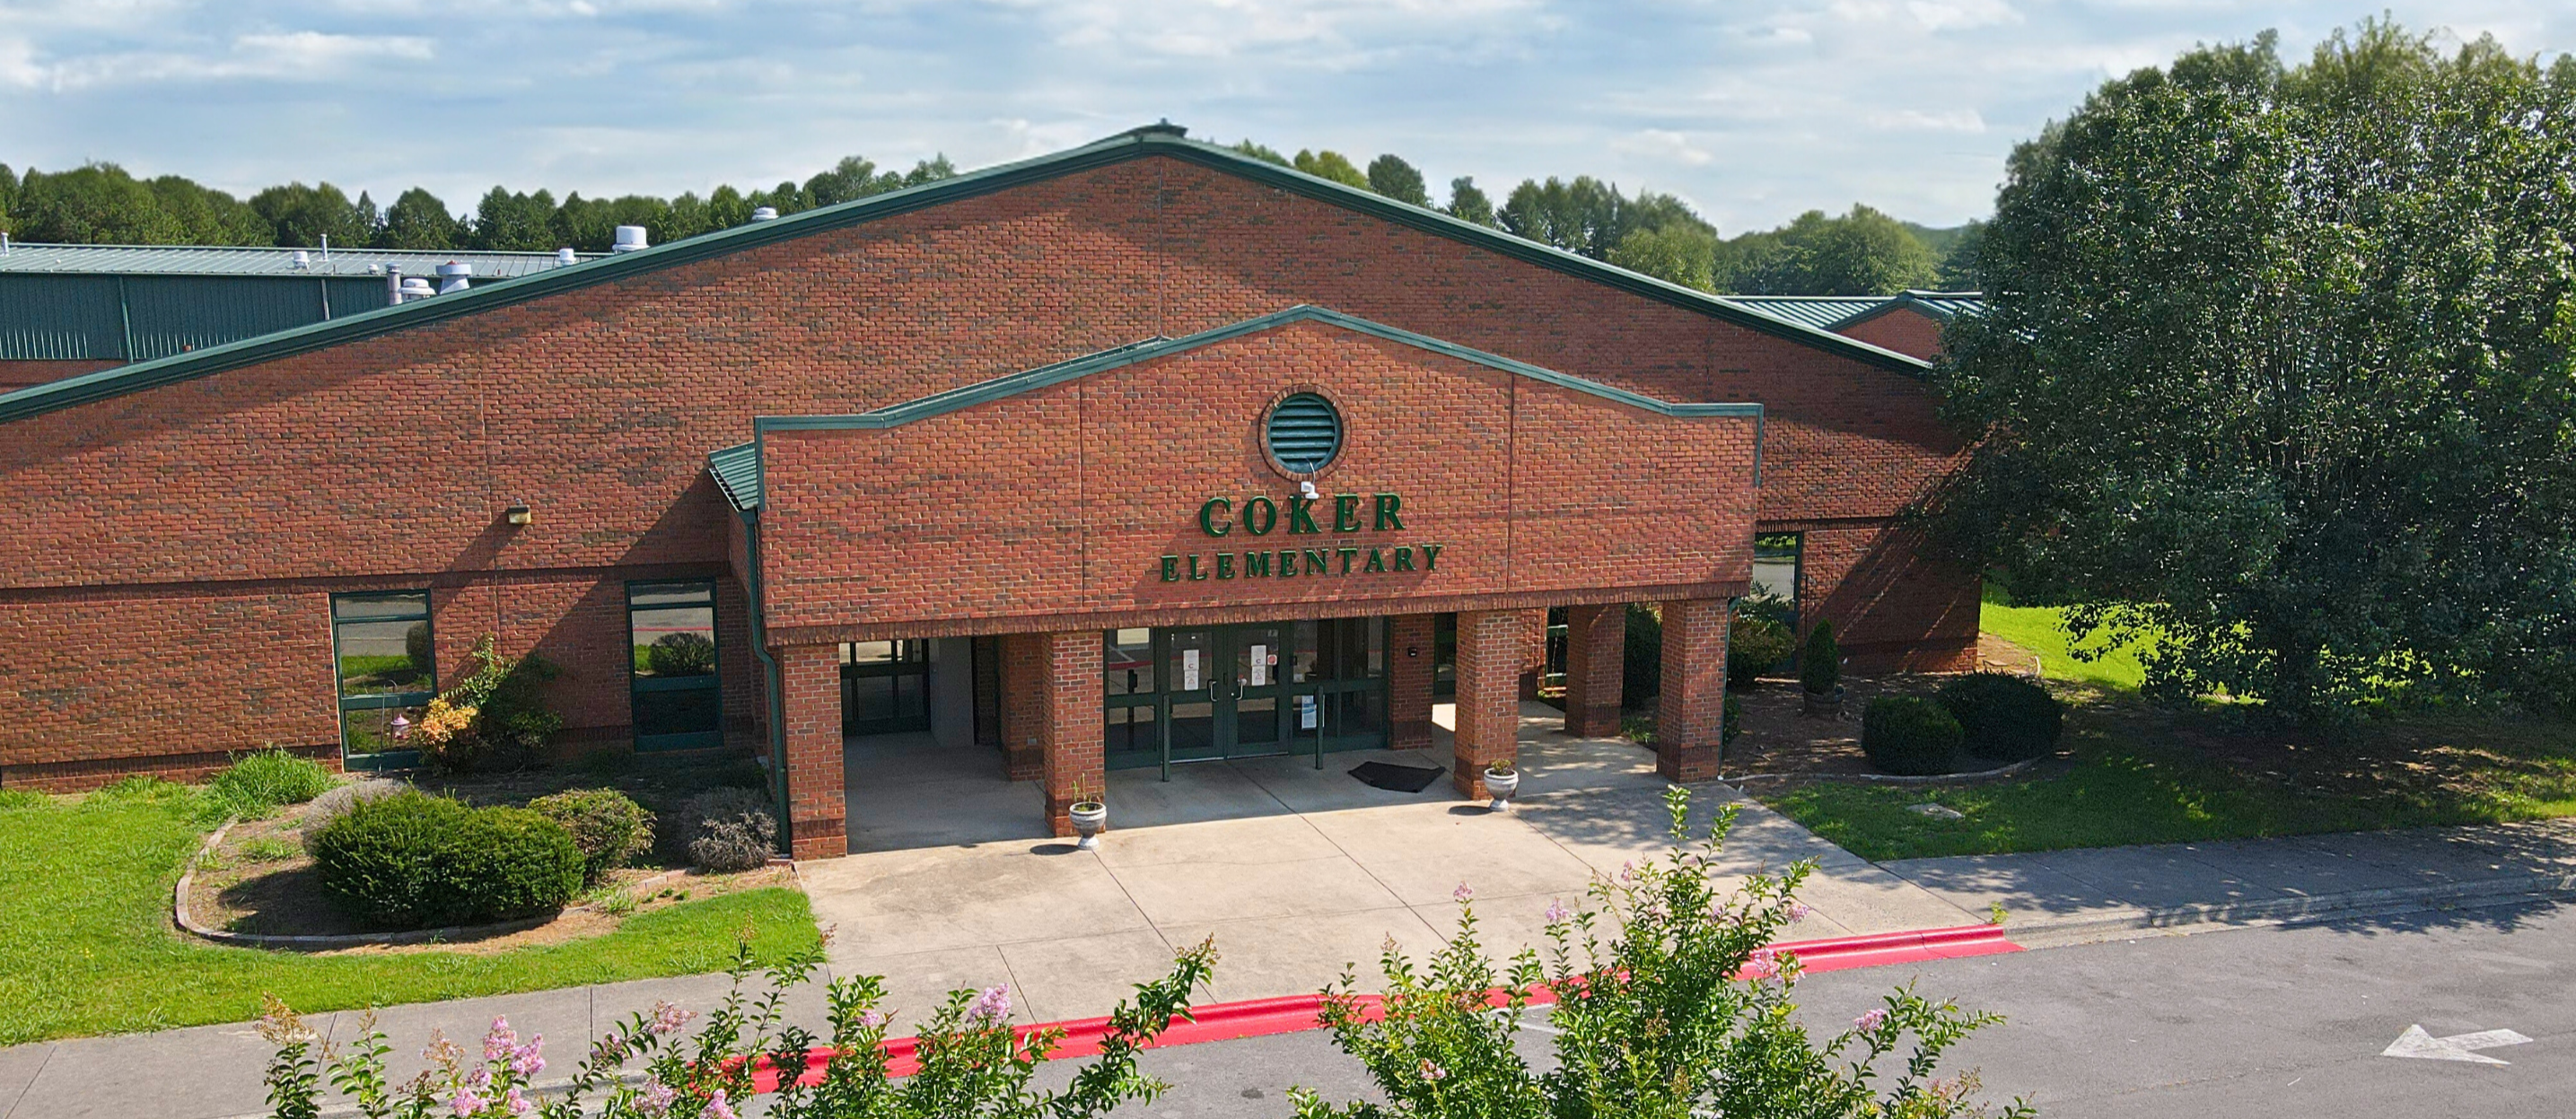 Coker Elementary